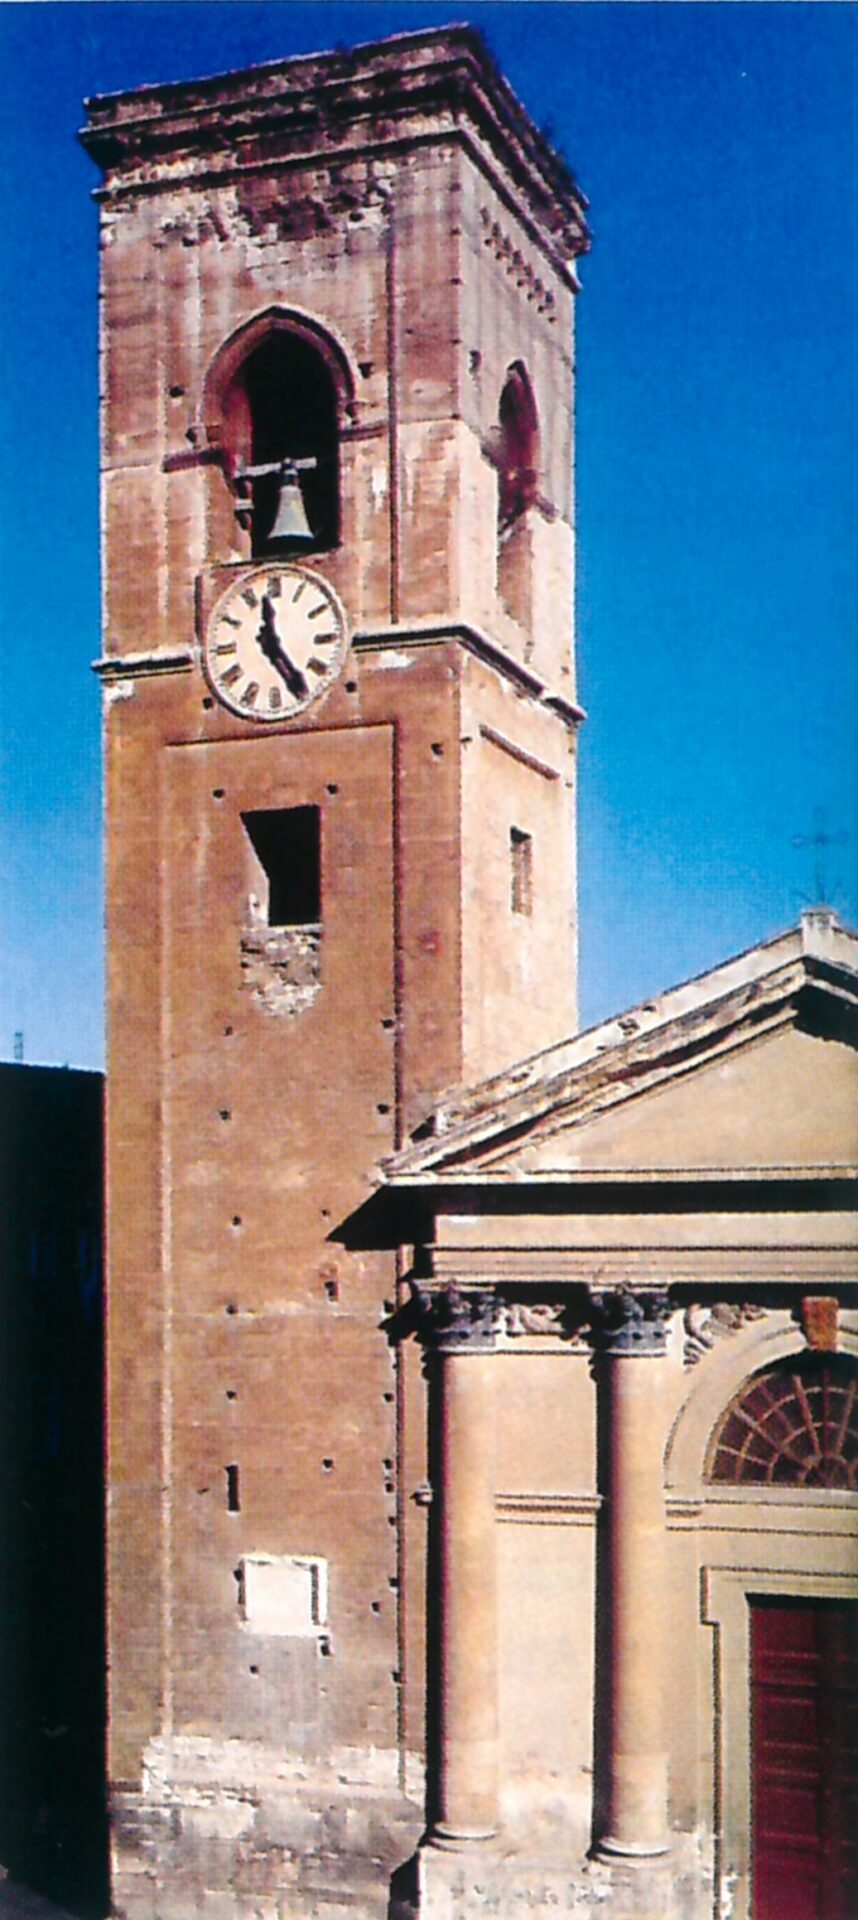 Fig 4, Cagliari, parrocchiale di San Giacomo, campanile (foto tratta da P. Segni Pulvirenti - A. Sari, Architettura tardo gotica e di influsso rinascimentale, Nuoro 1994, p. 38).